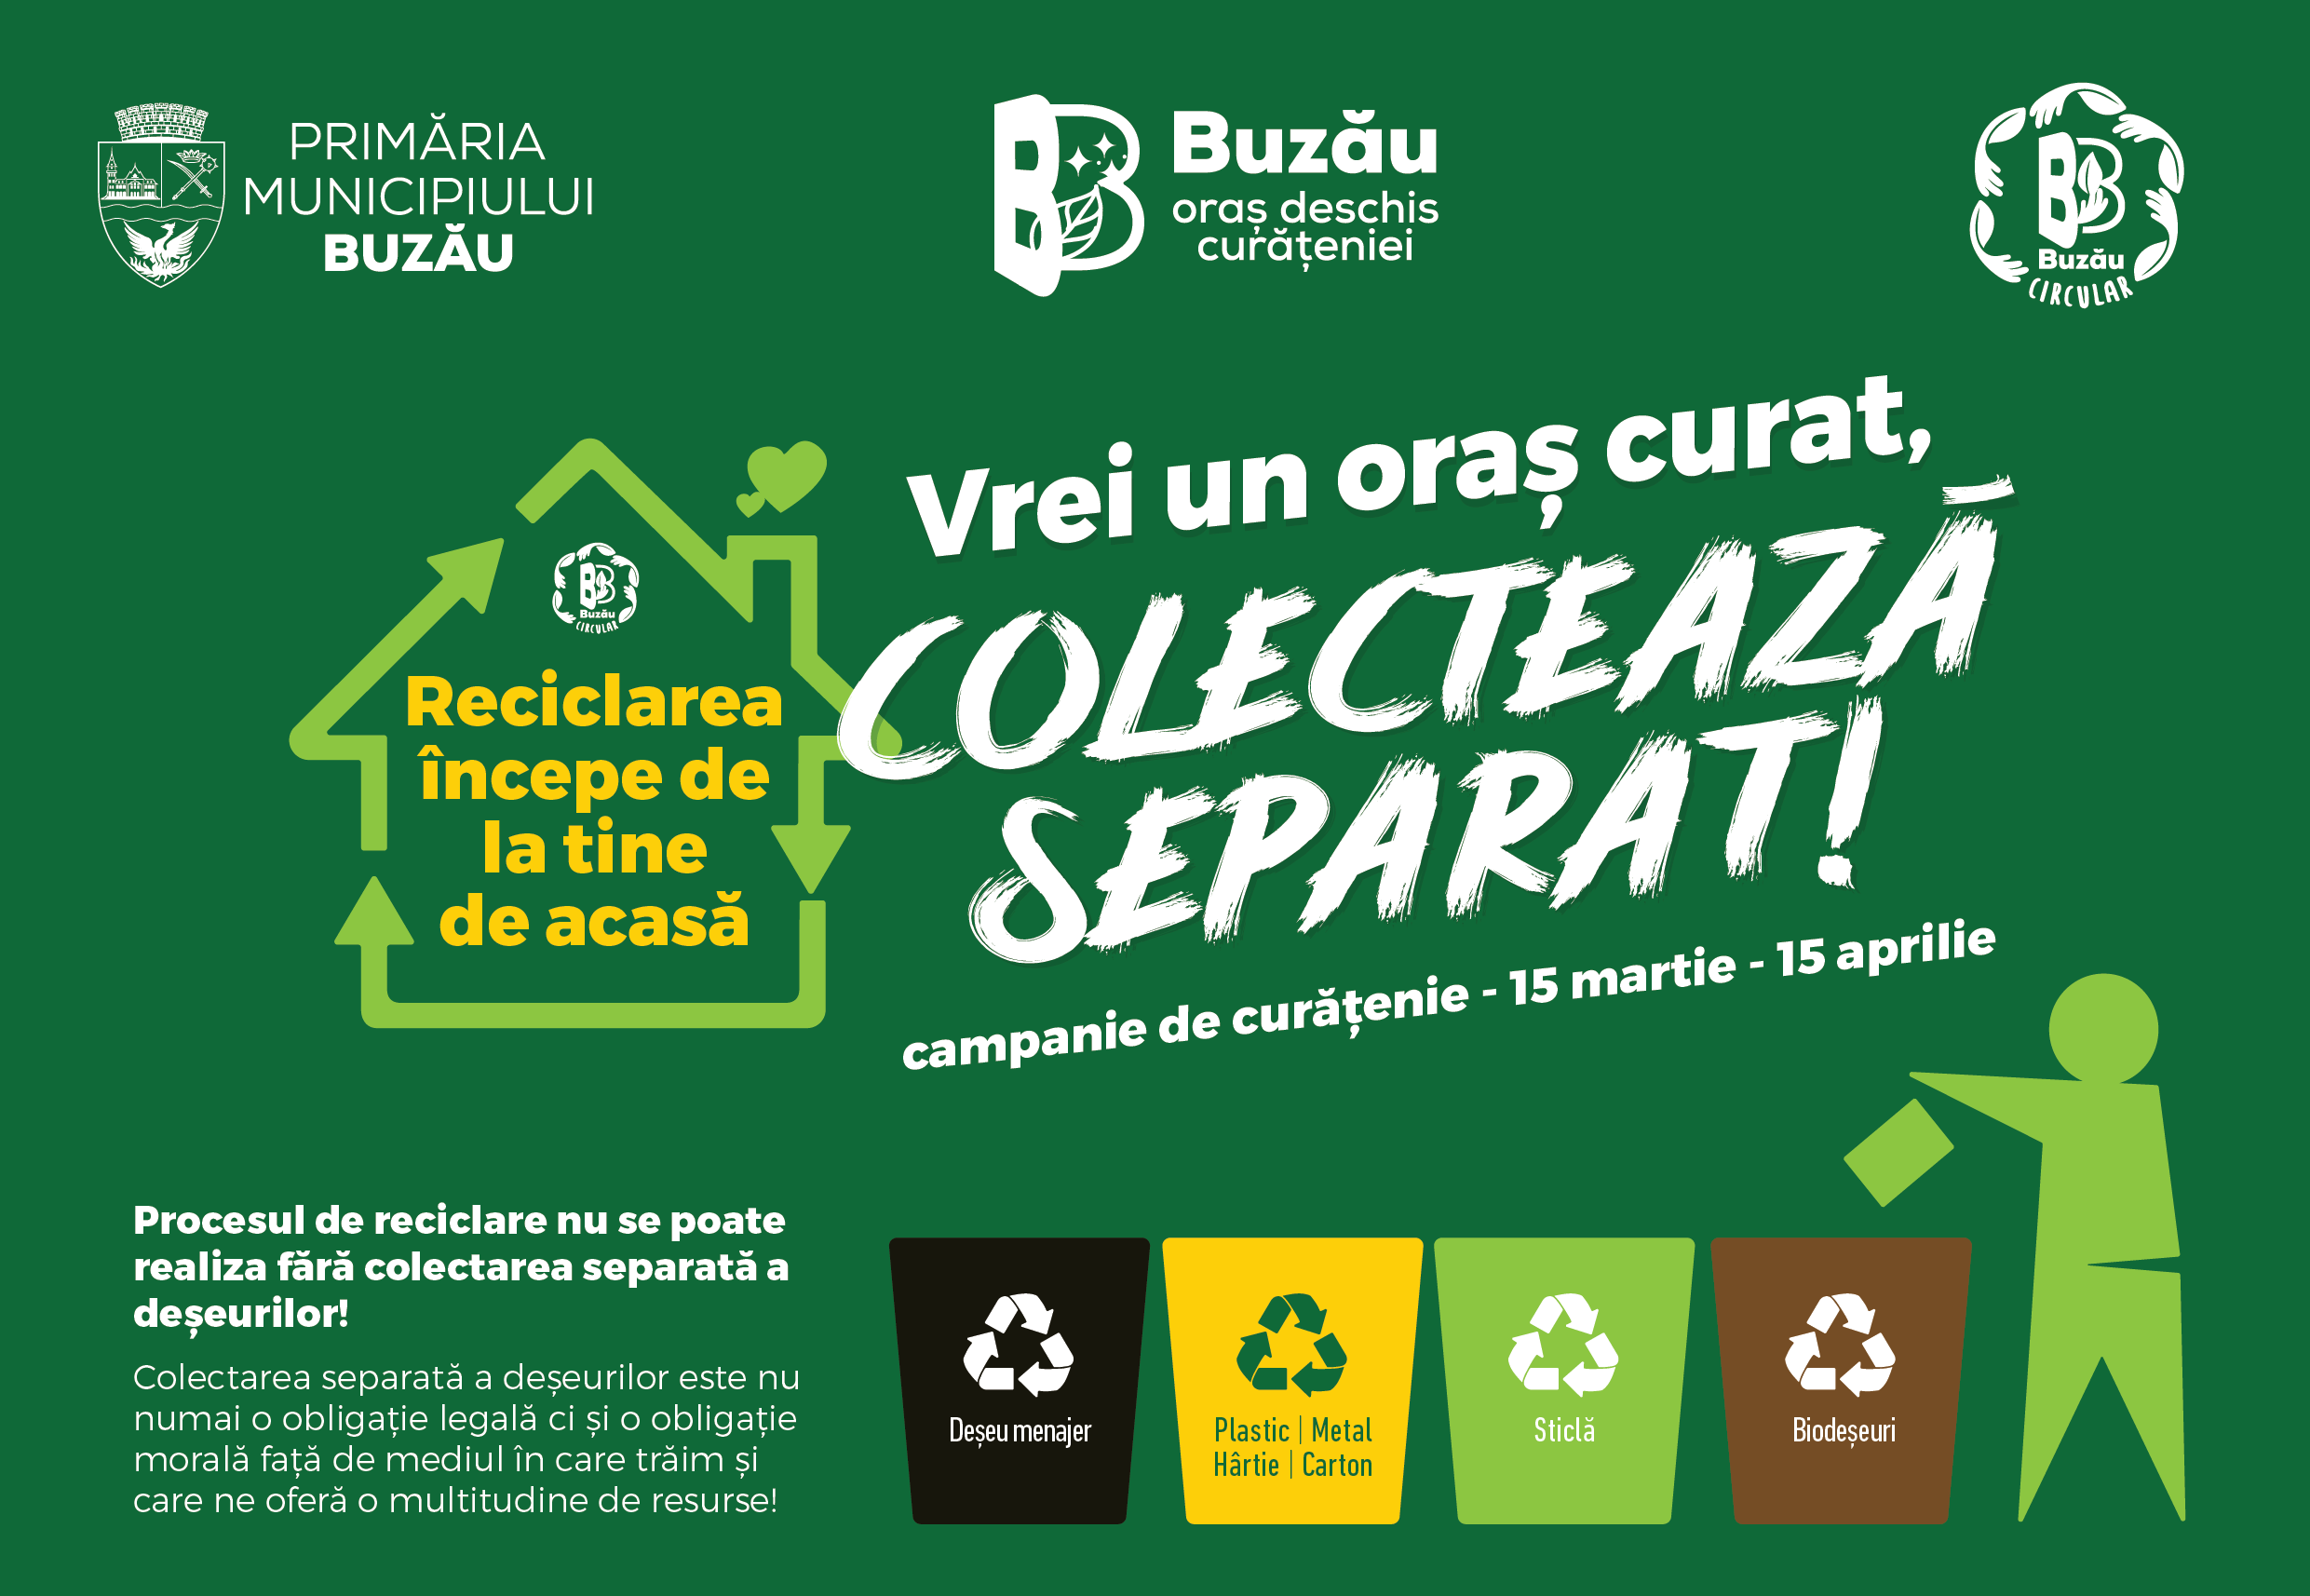 ,,Vrei un oraș curat, colectează separat!”. Iată programul campaniei de curățenie de primăvară din Buzău